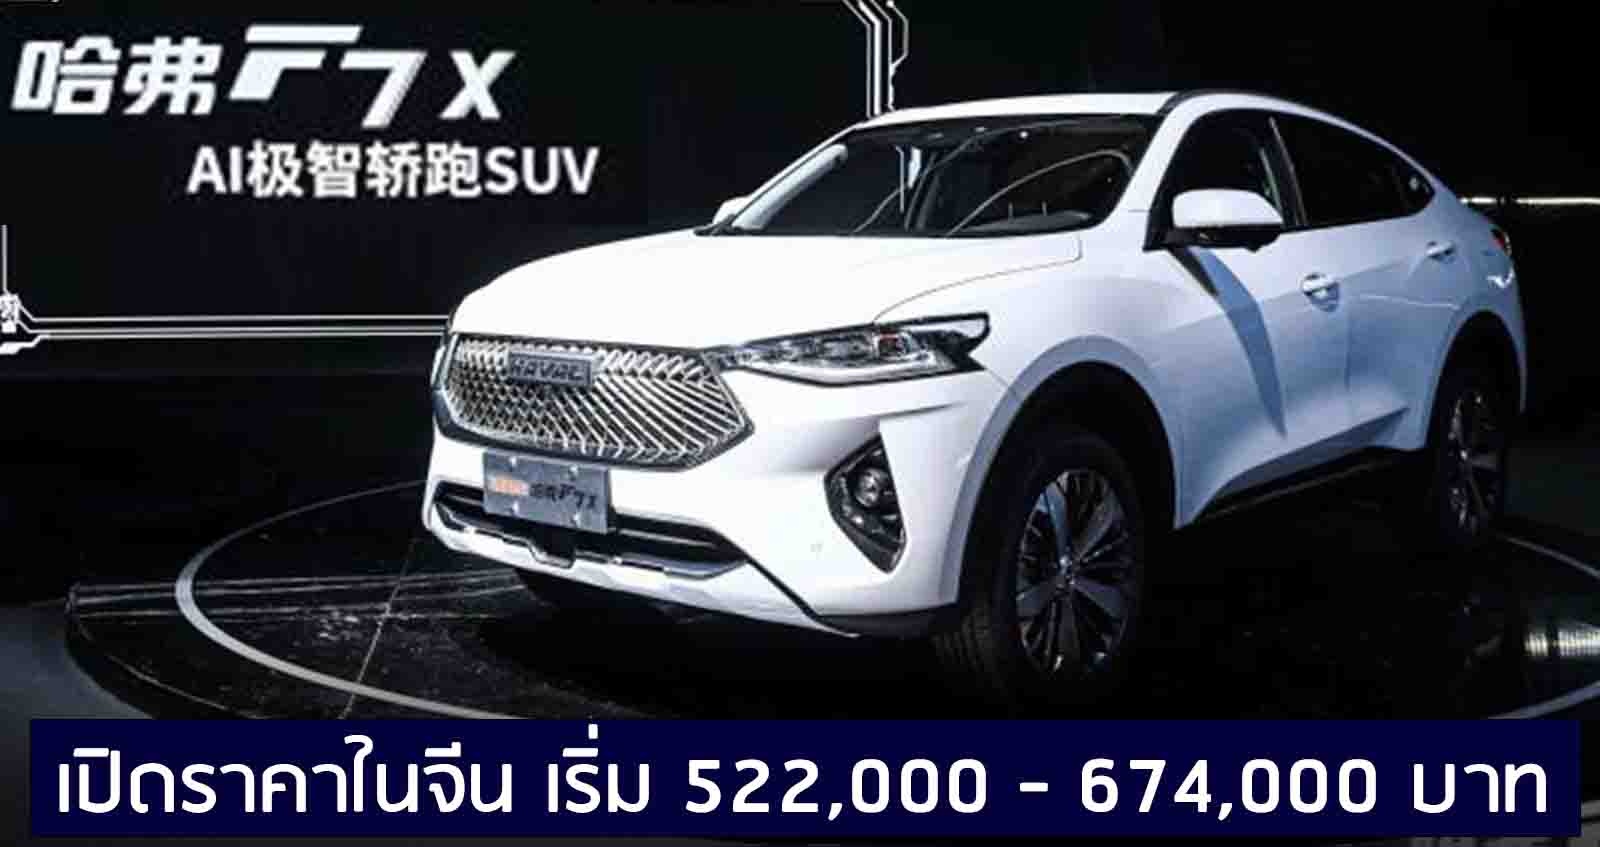 เปิดราคา Haval F7x SUV เริ่ม 522,000 บาท ในจีน